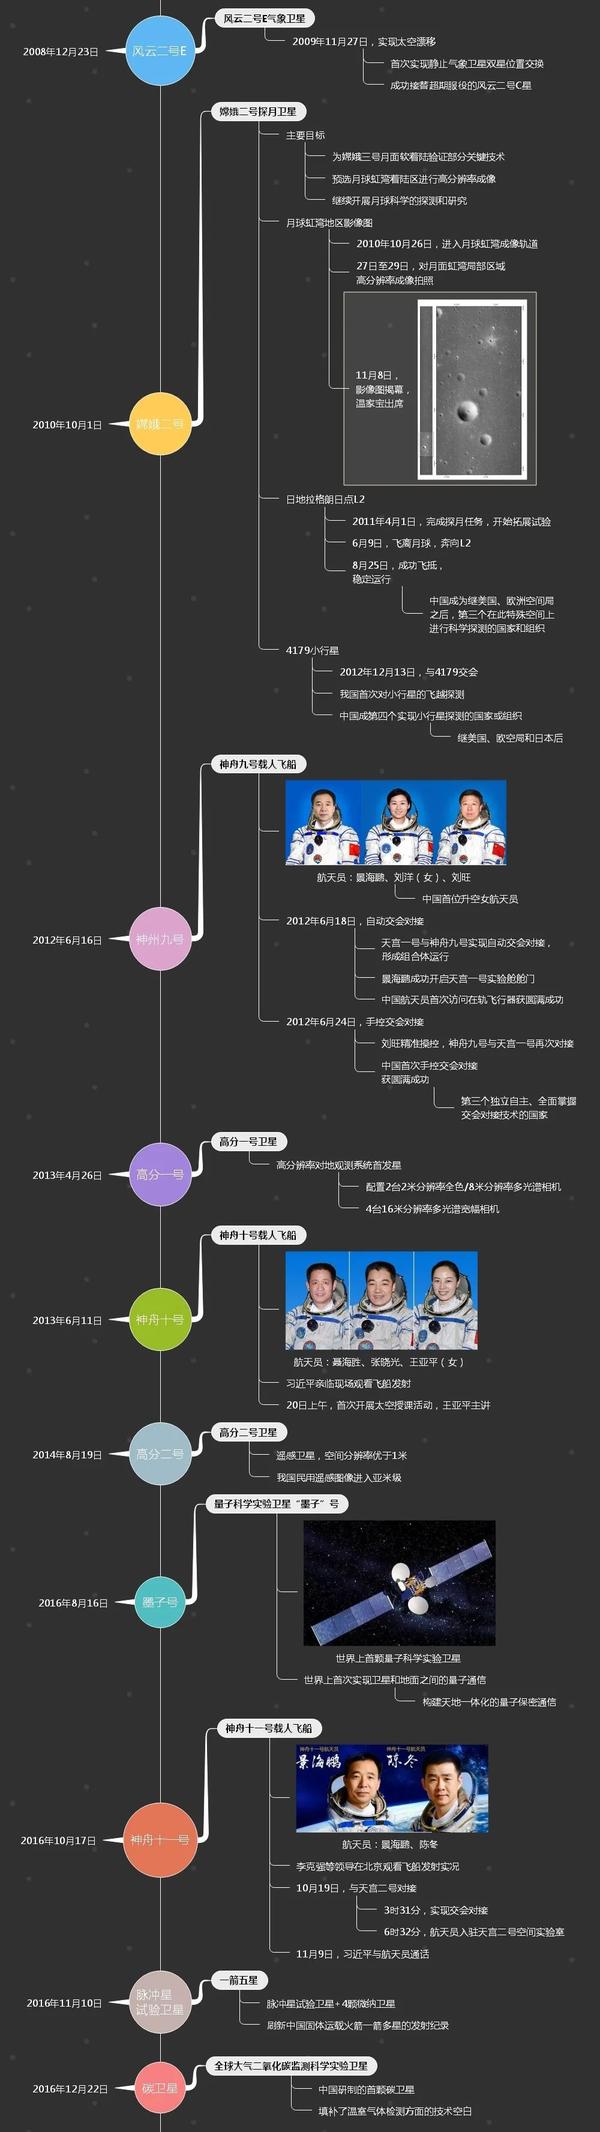 中国航天65年大事记,时间线导图